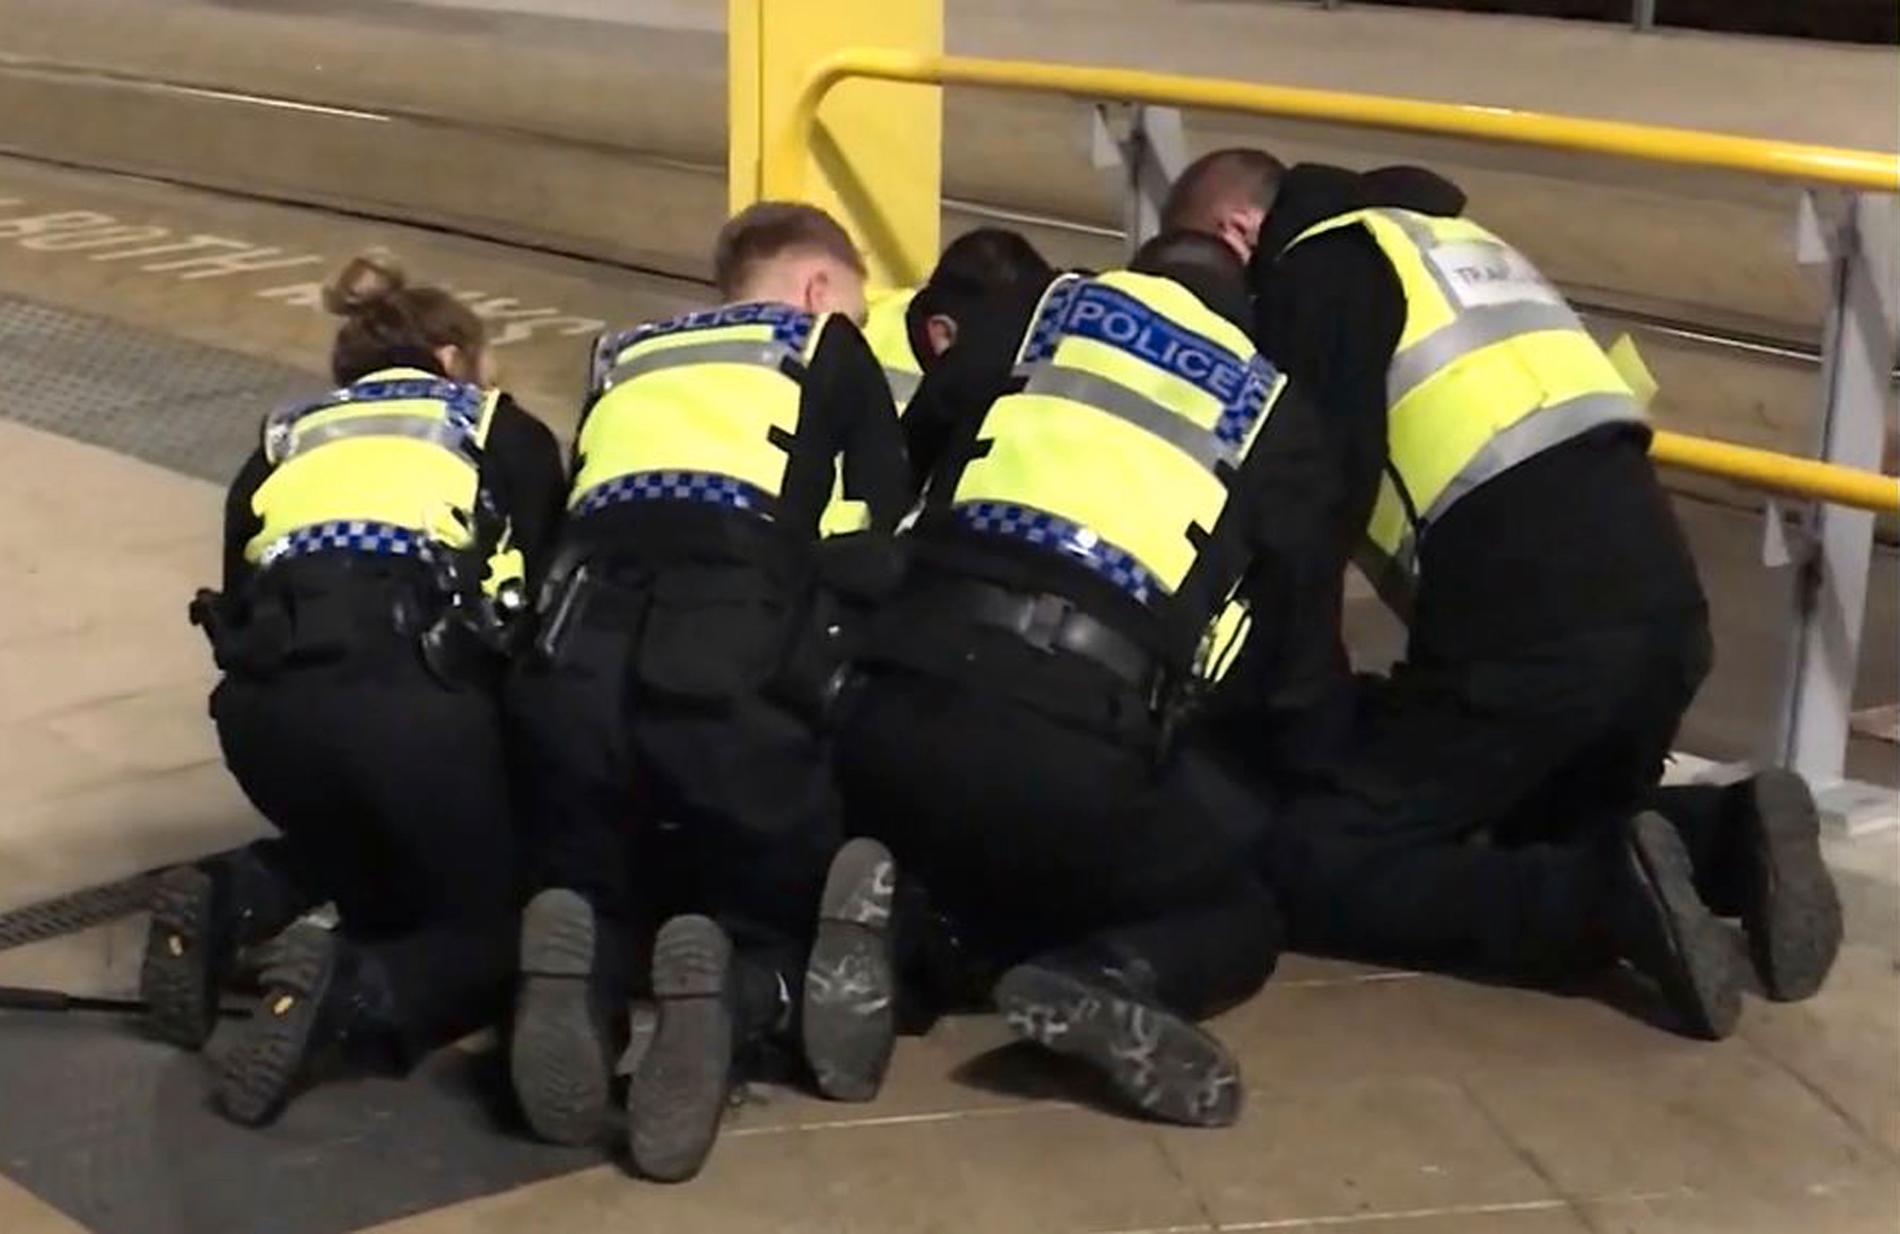 Polis griper den misstänkte terroristen som knivhögg tre personer på Victoria Station i Manchester i England.